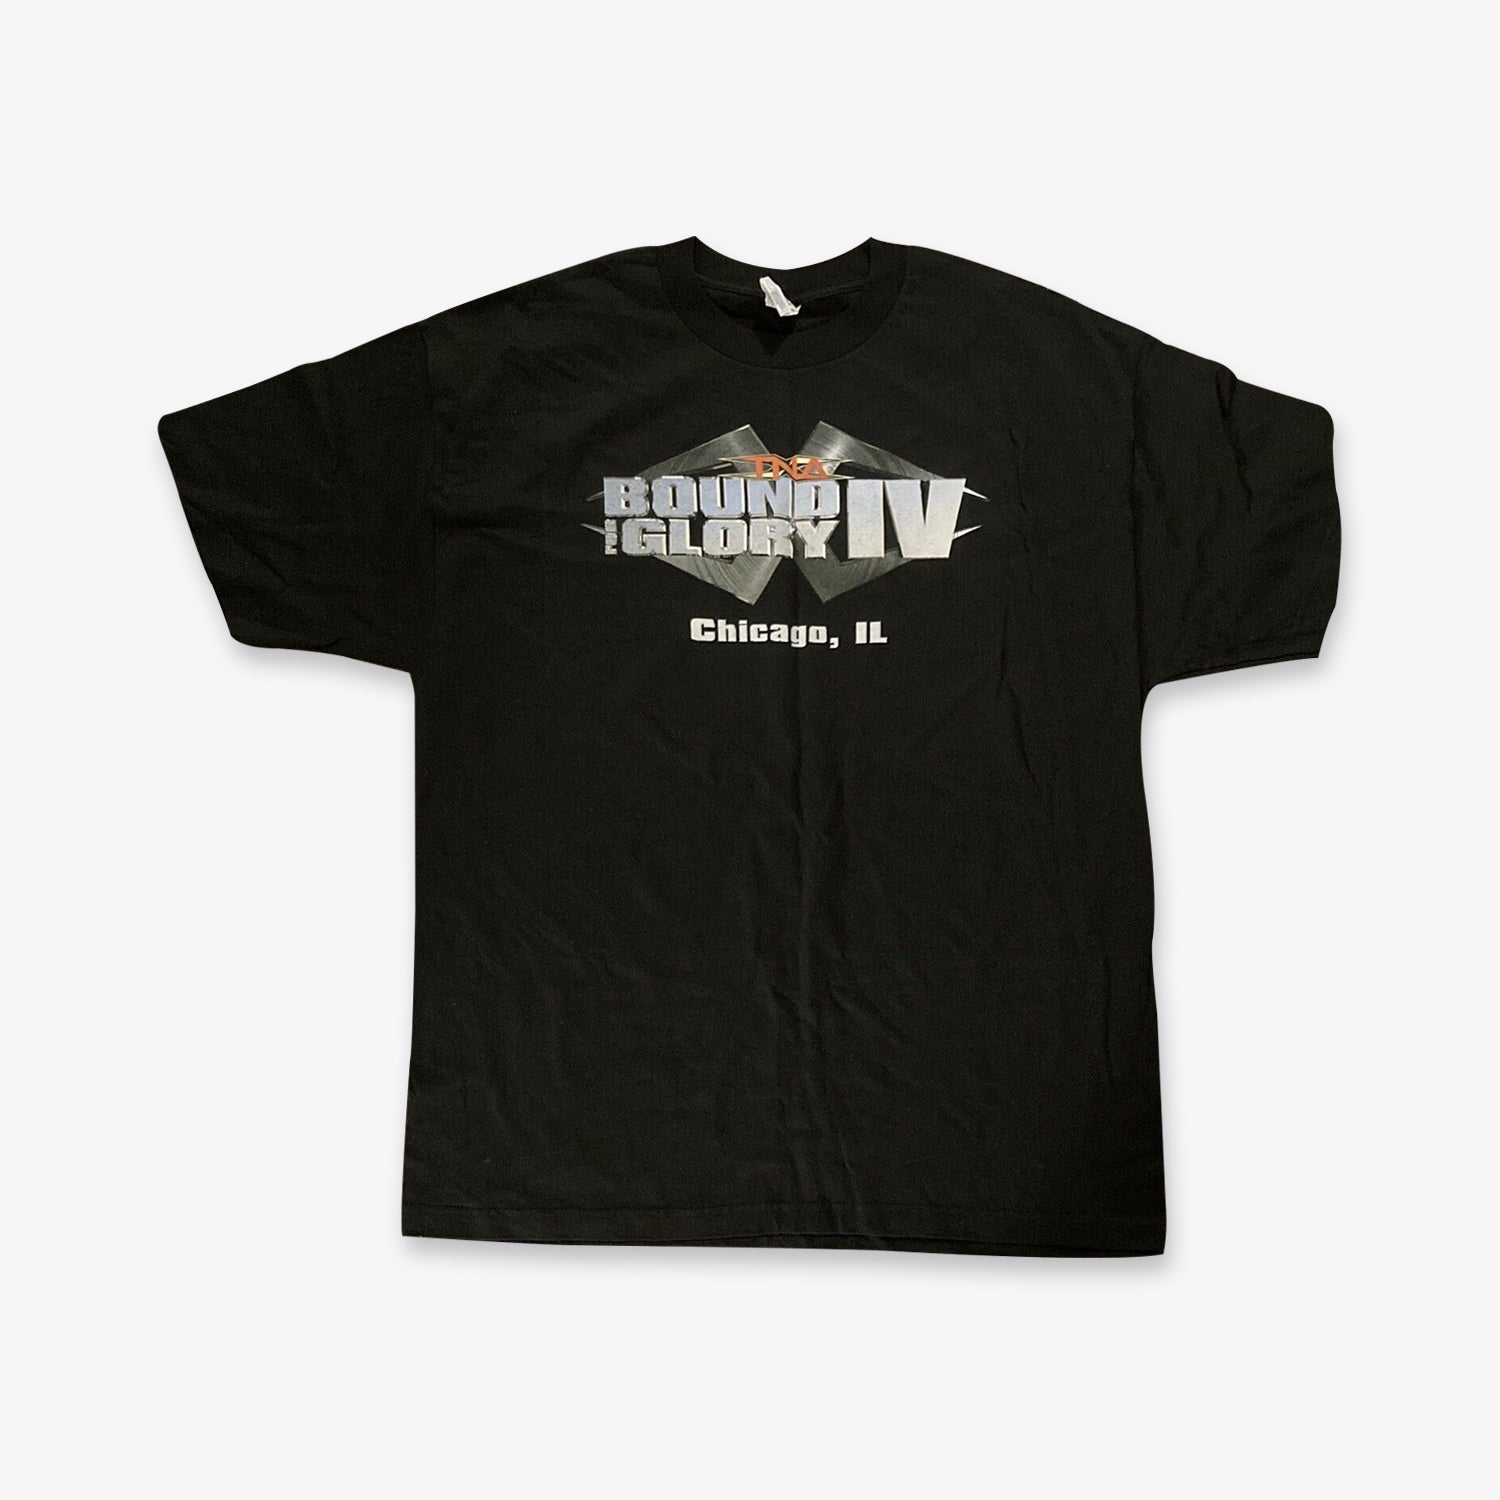 TNA Wrestling Bound For Glory Event Shirt from Fightabilia.com